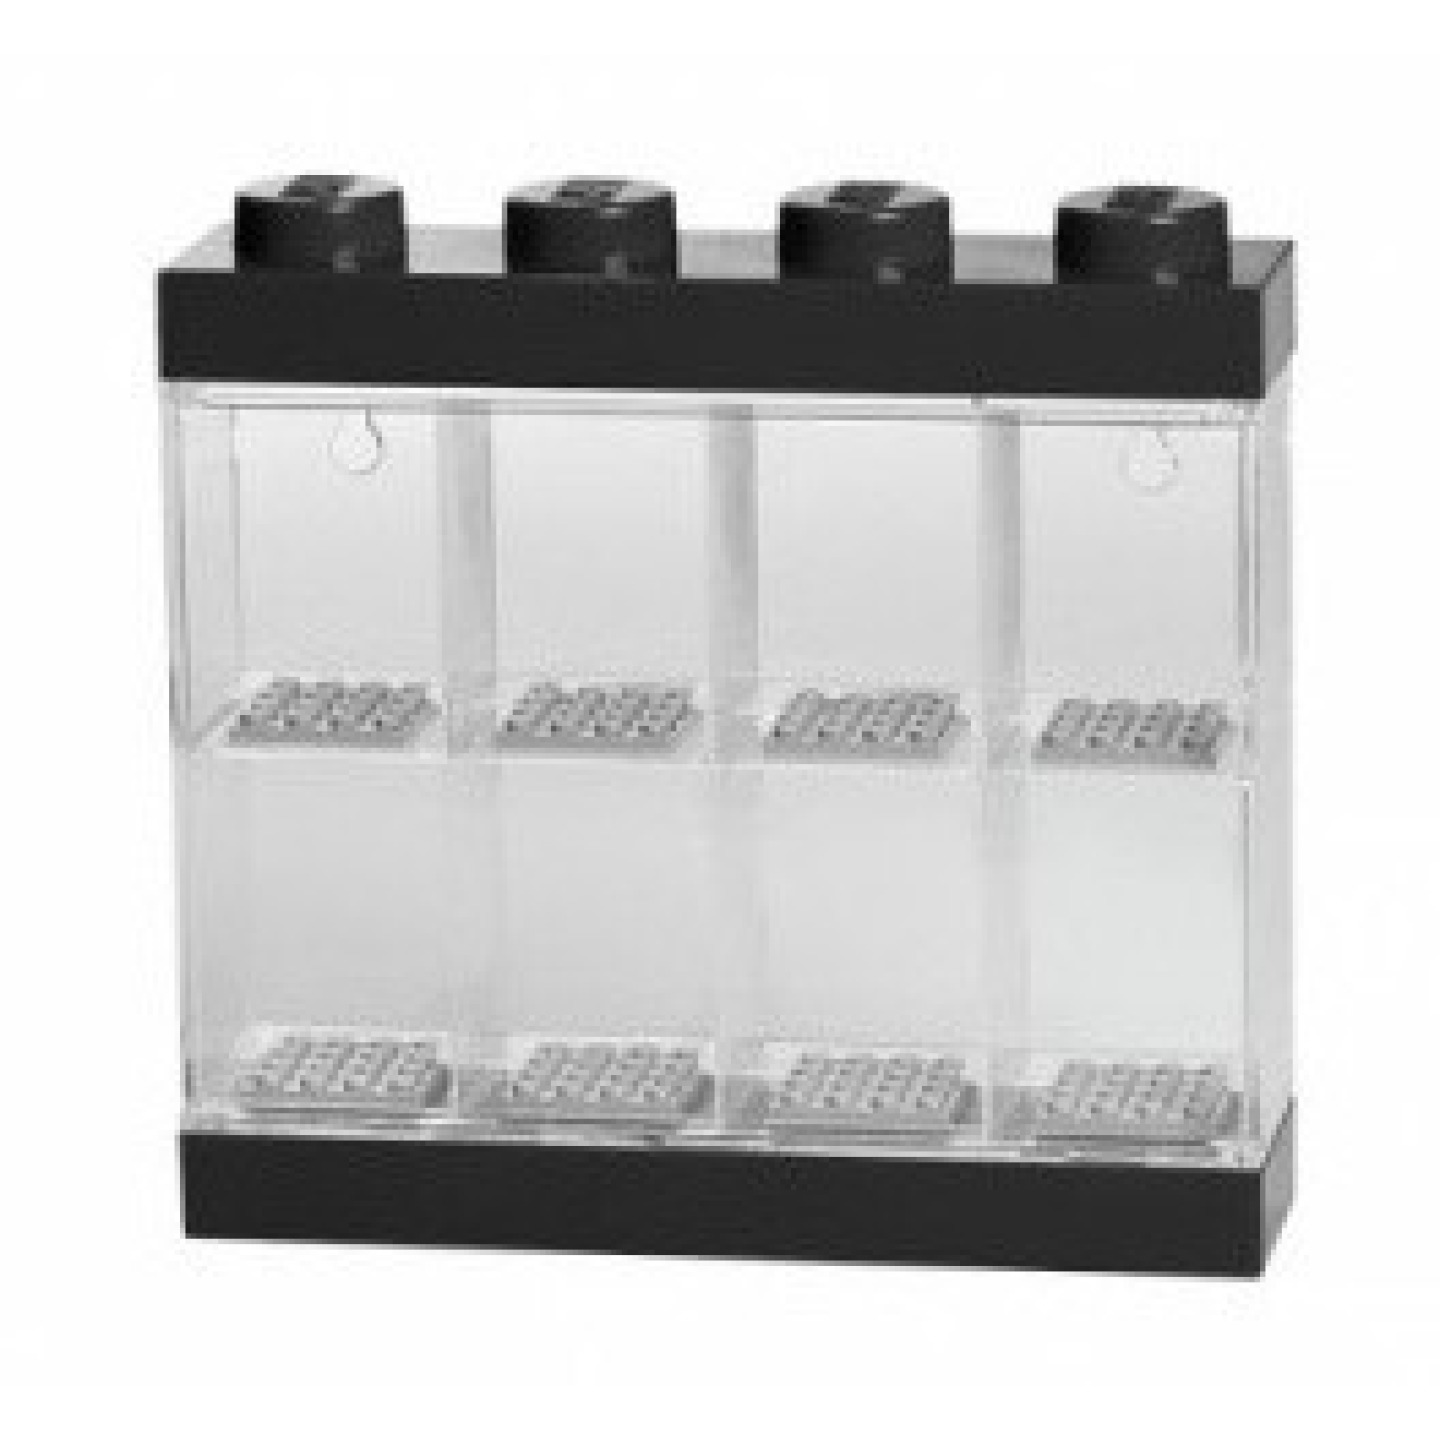 Lego® vitrínka na 8 minifigurek černá